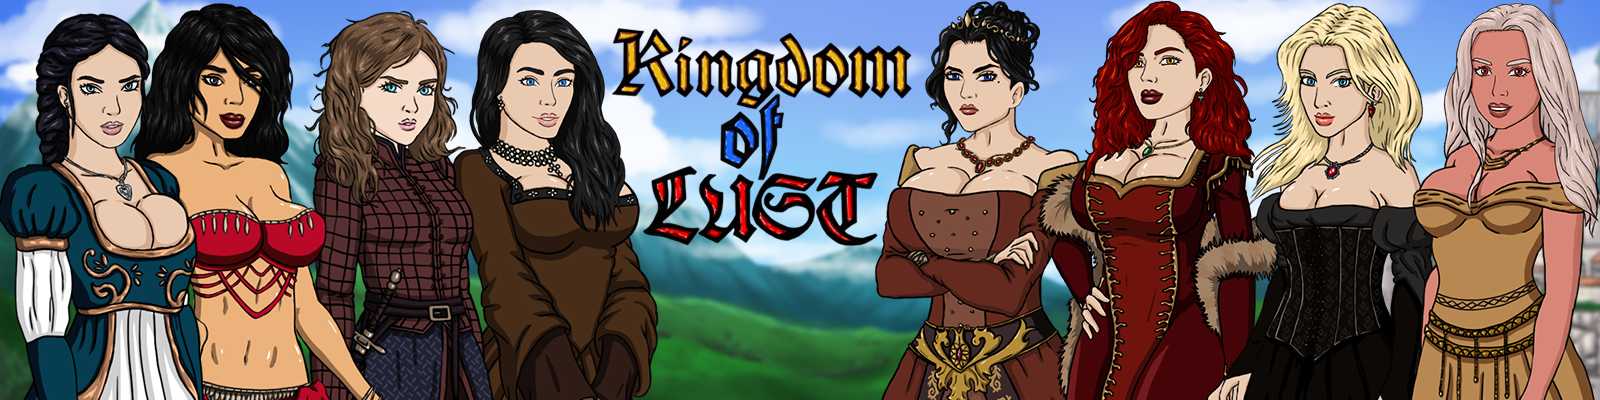 [18+ EN] Kingdom of Lust – Trở Thành Chàng Hoàng Tử Số Hưởng | Android, PC